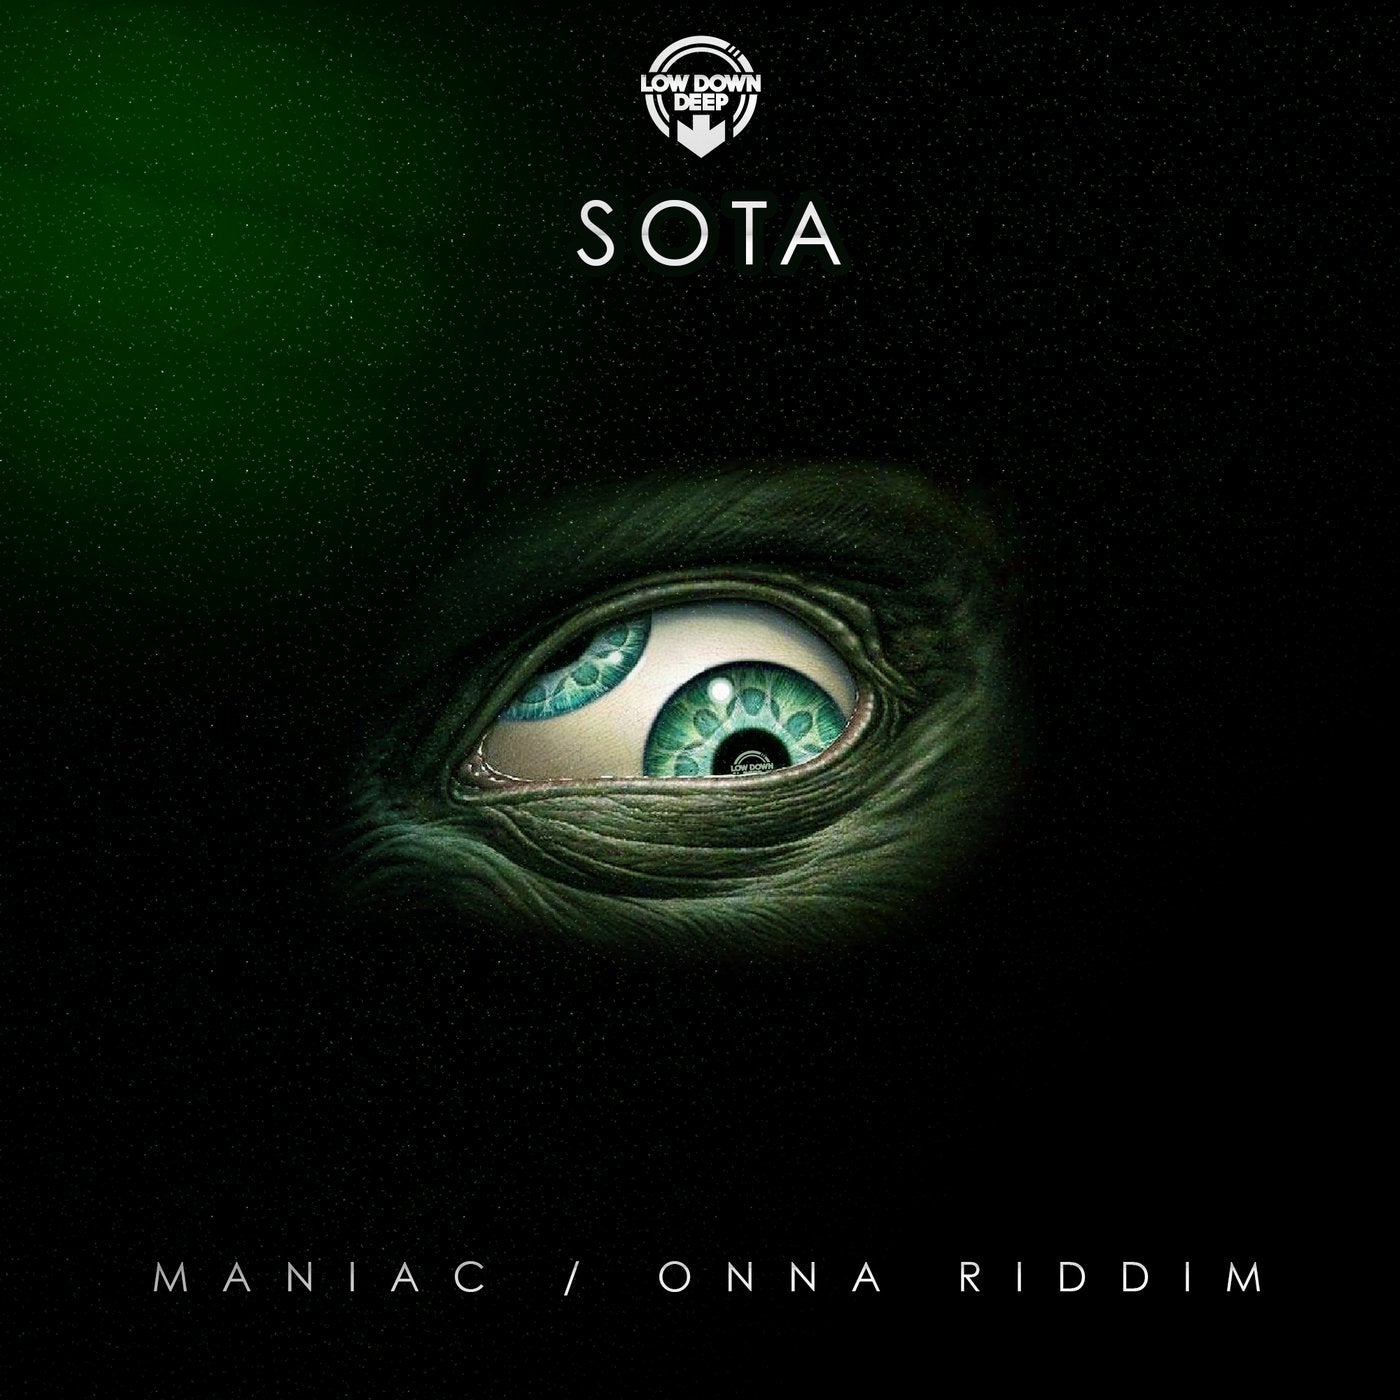 Maniac / Onna Riddim